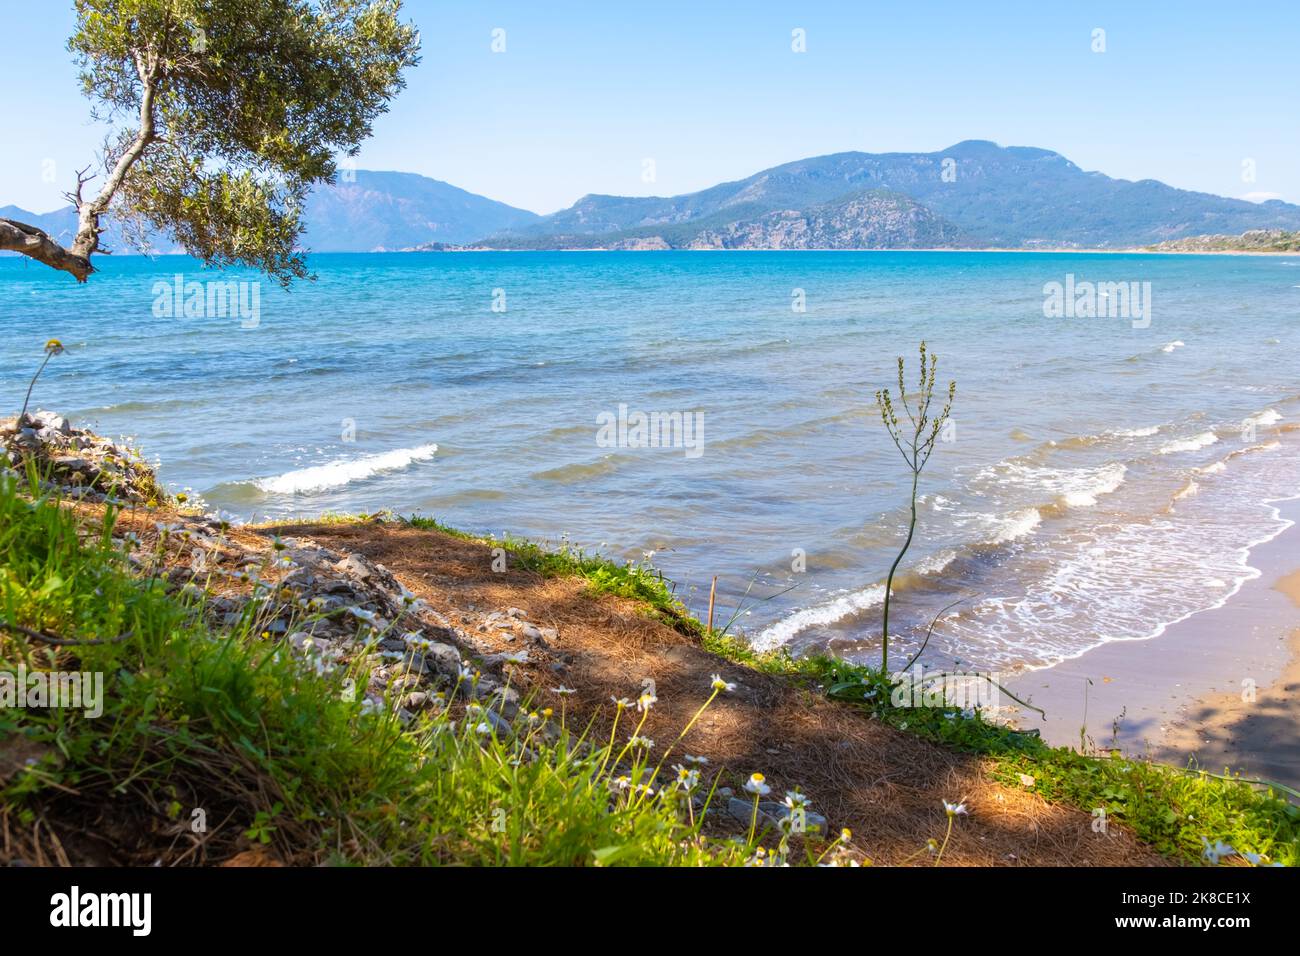 Istuzu playa cerca de la localidad turca de Dalyan. Larga playa de arena y lugar de anidación para tortugas Foto de stock